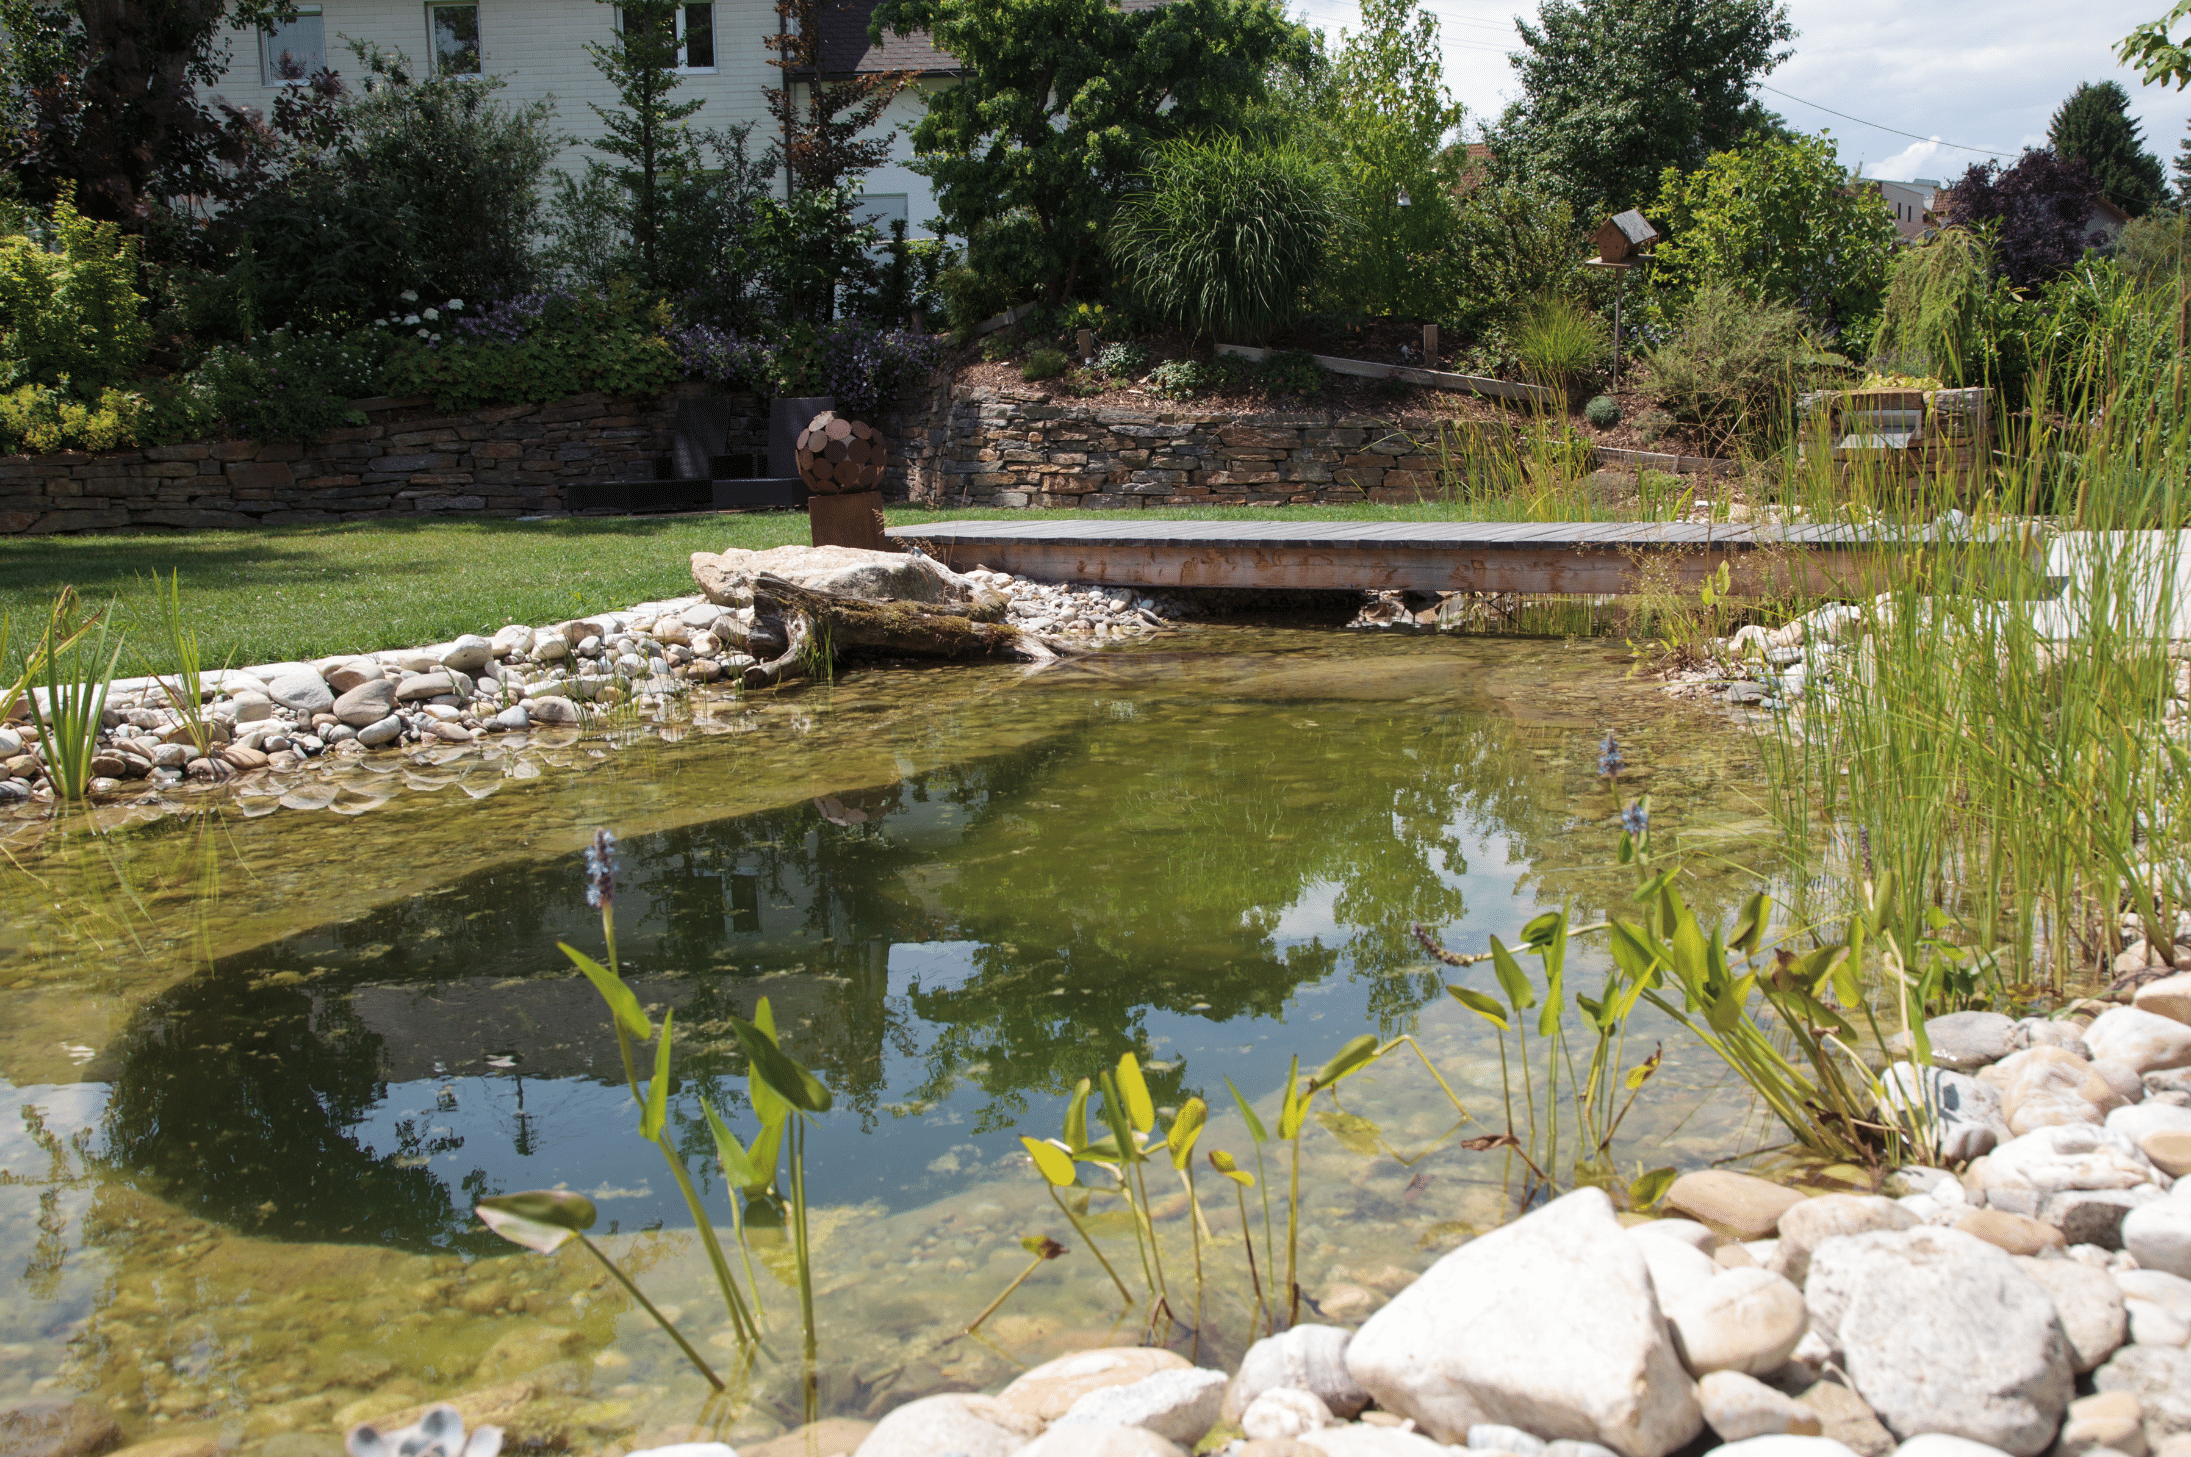 Hablesreiter zeigt einen Naturpool mit Steinumrandung und einer Brücke aus Holz darüber in einem großen Garten.